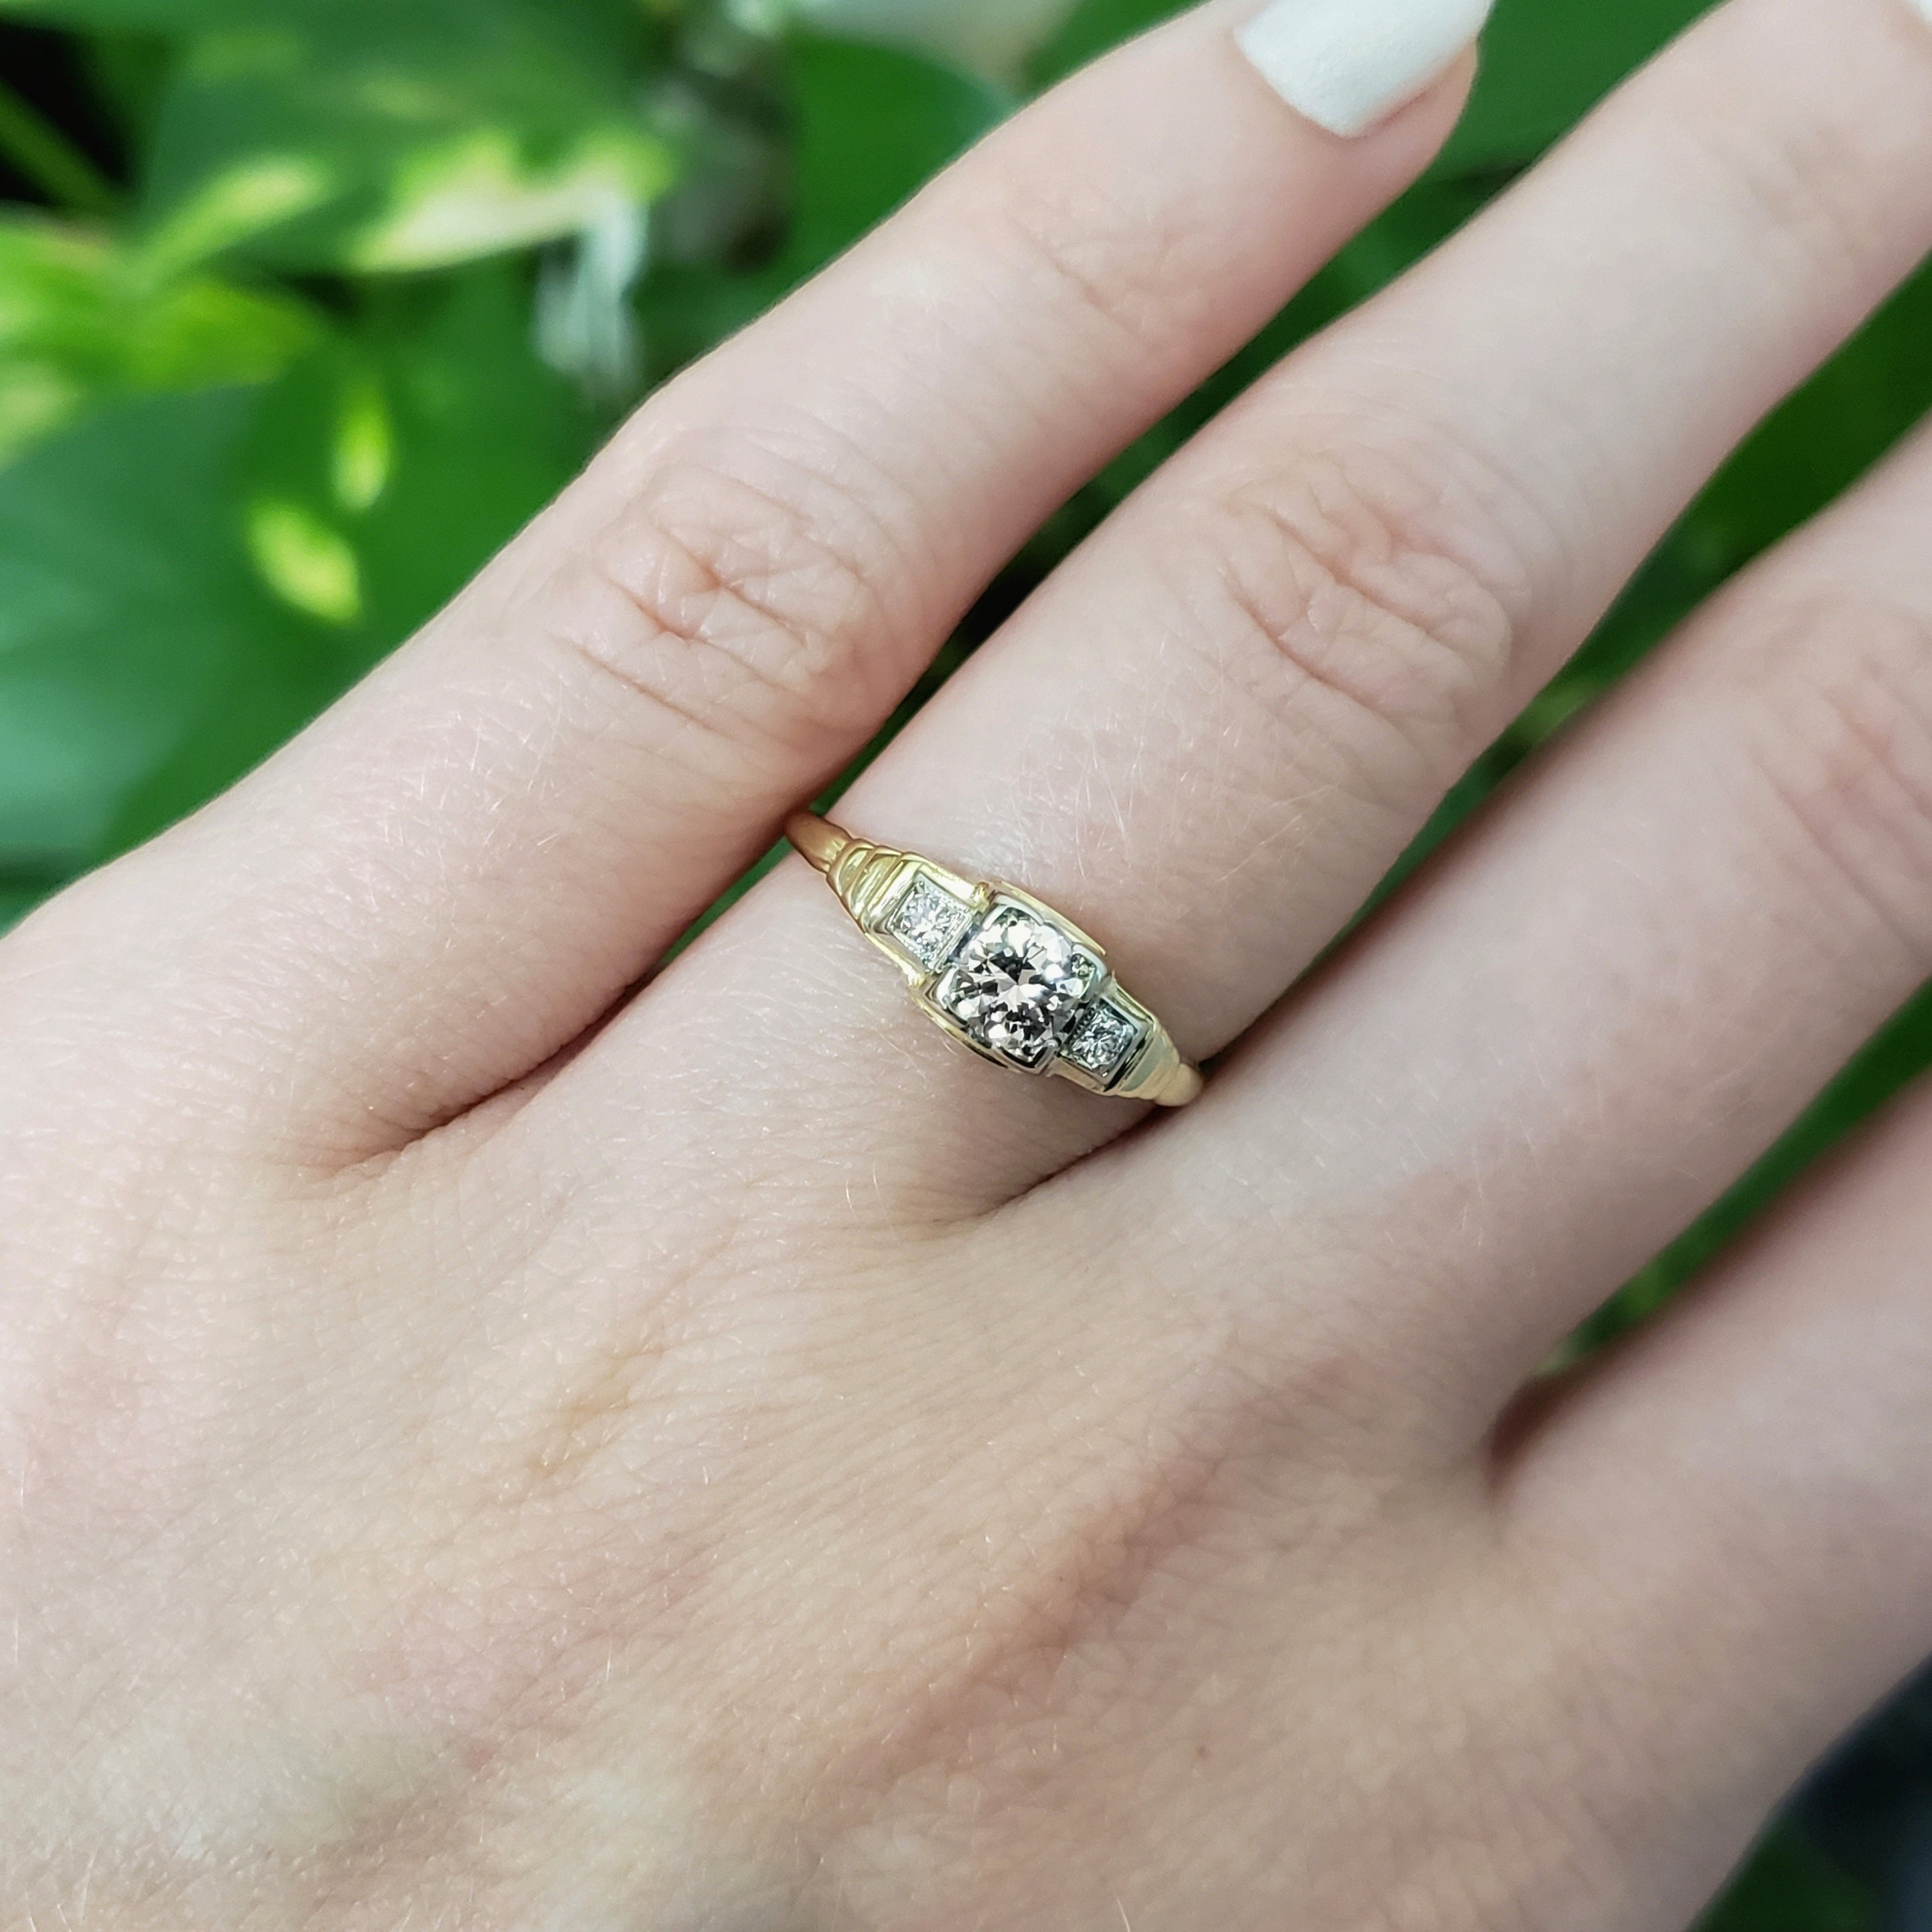 Antique Victorian era engagement ring with fleur-de-lis design